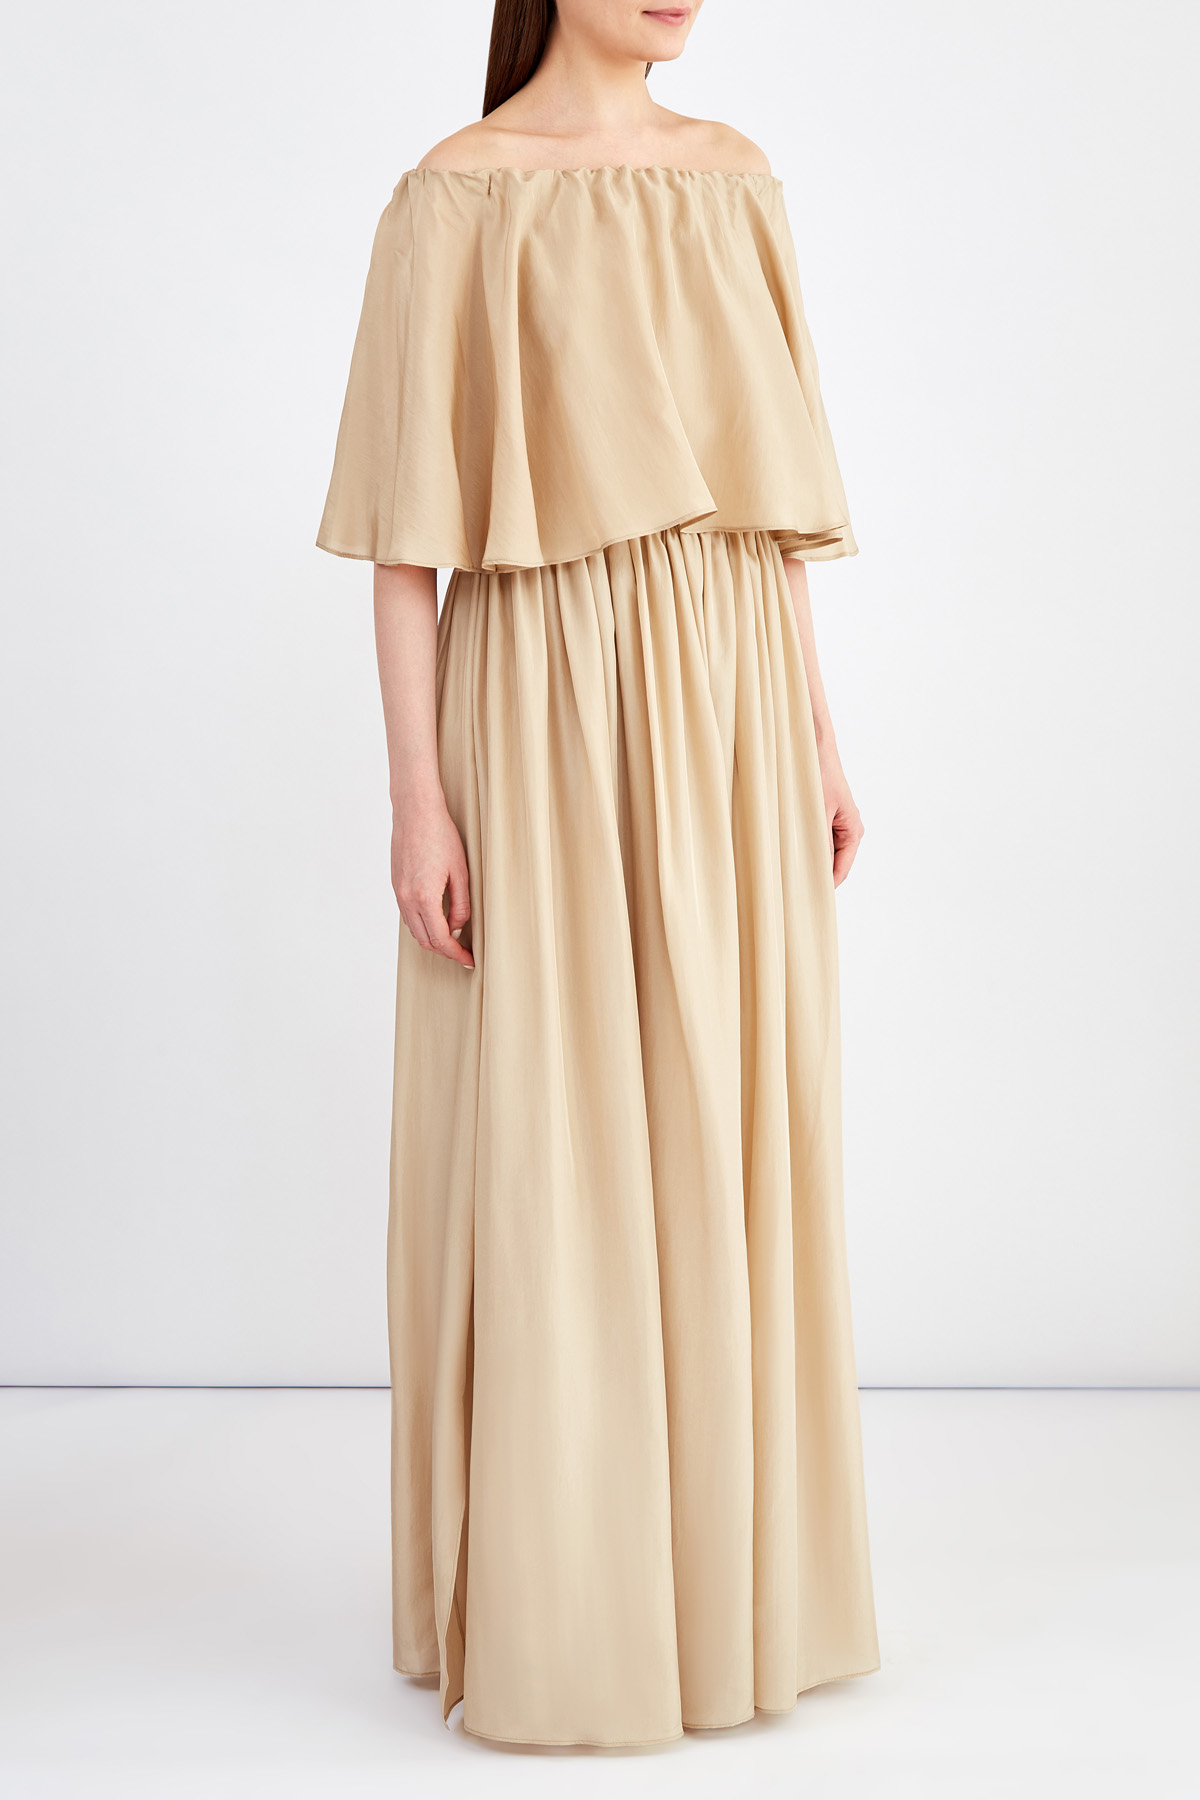 Шелковое платье в пол в стиле бохо с драпировками BRUNELLO CUCINELLI, цвет бежевый, размер 44;42 - фото 3